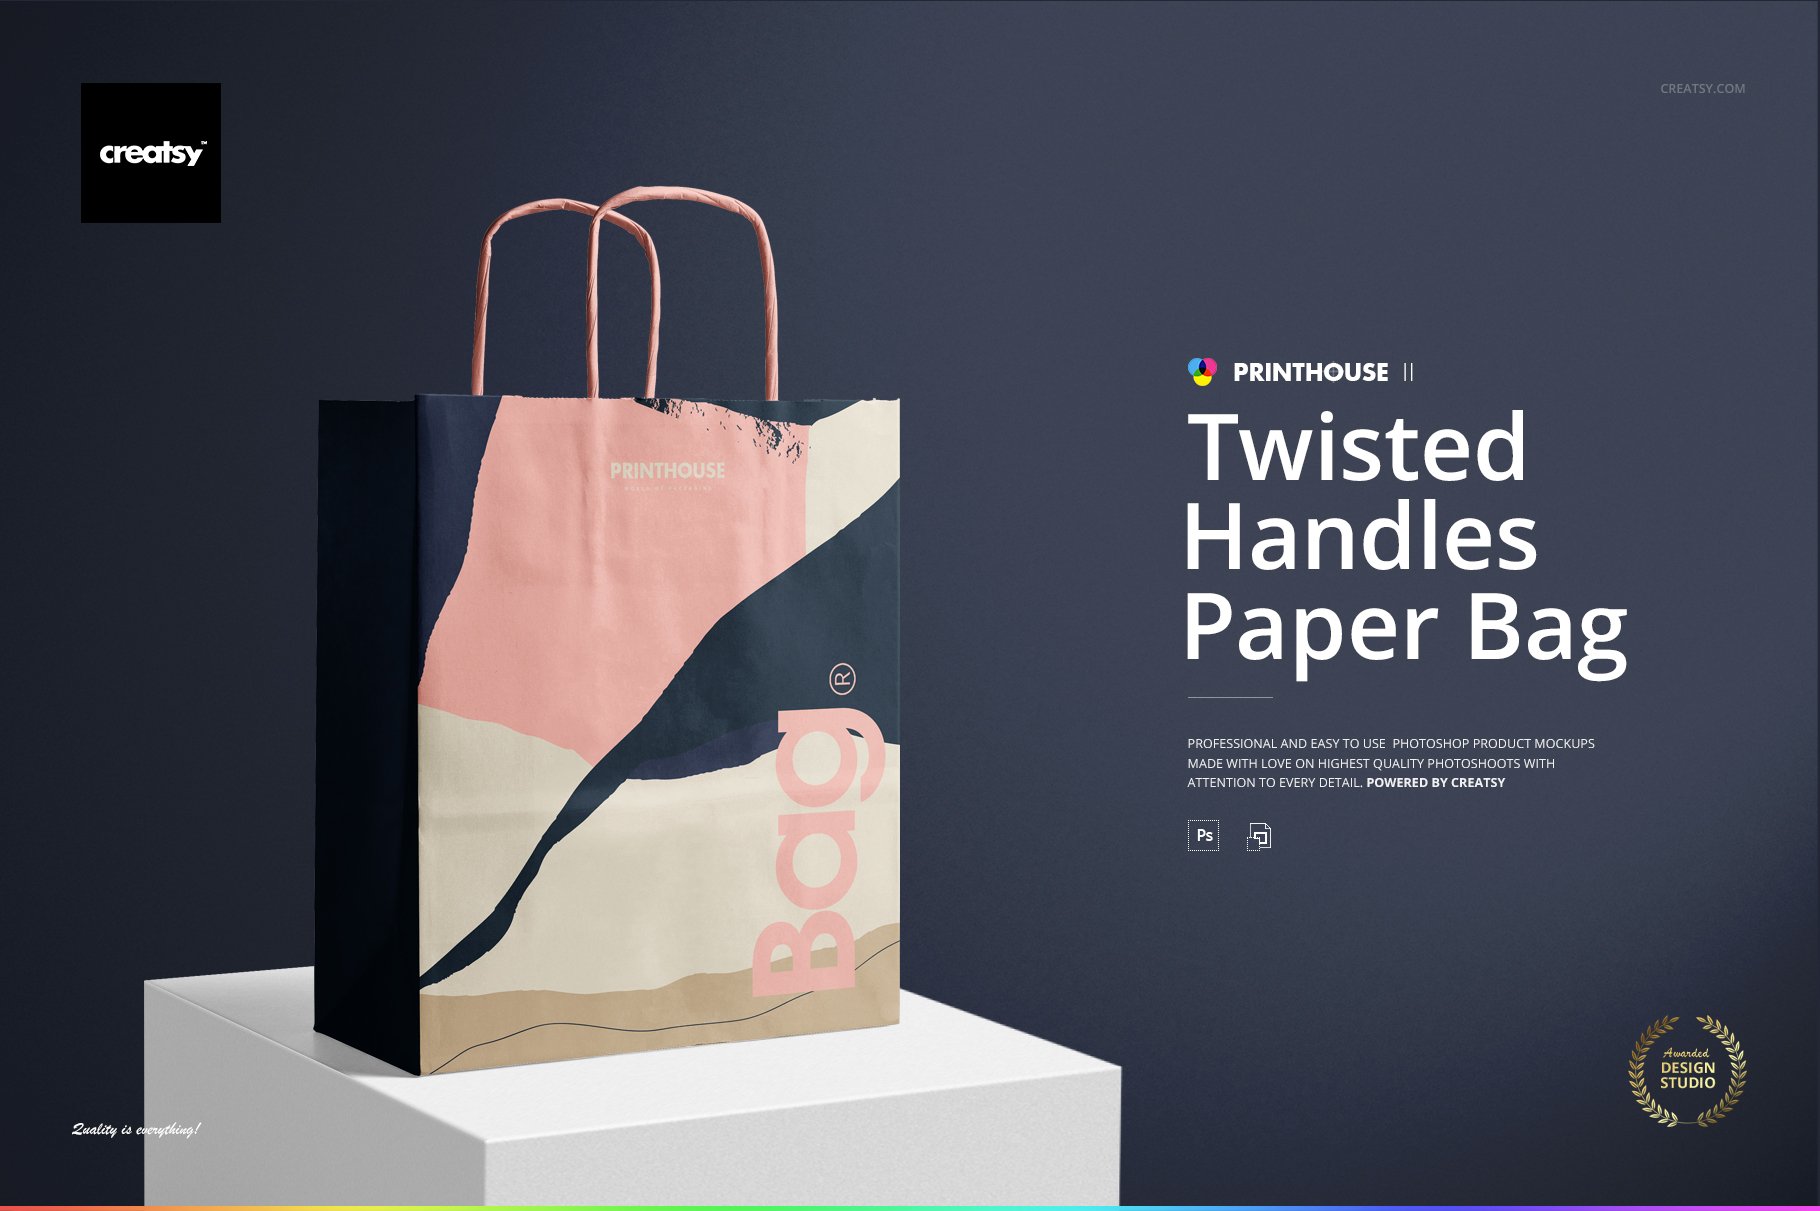 Twisted Handles Paper Bag Mockup Set cover image.